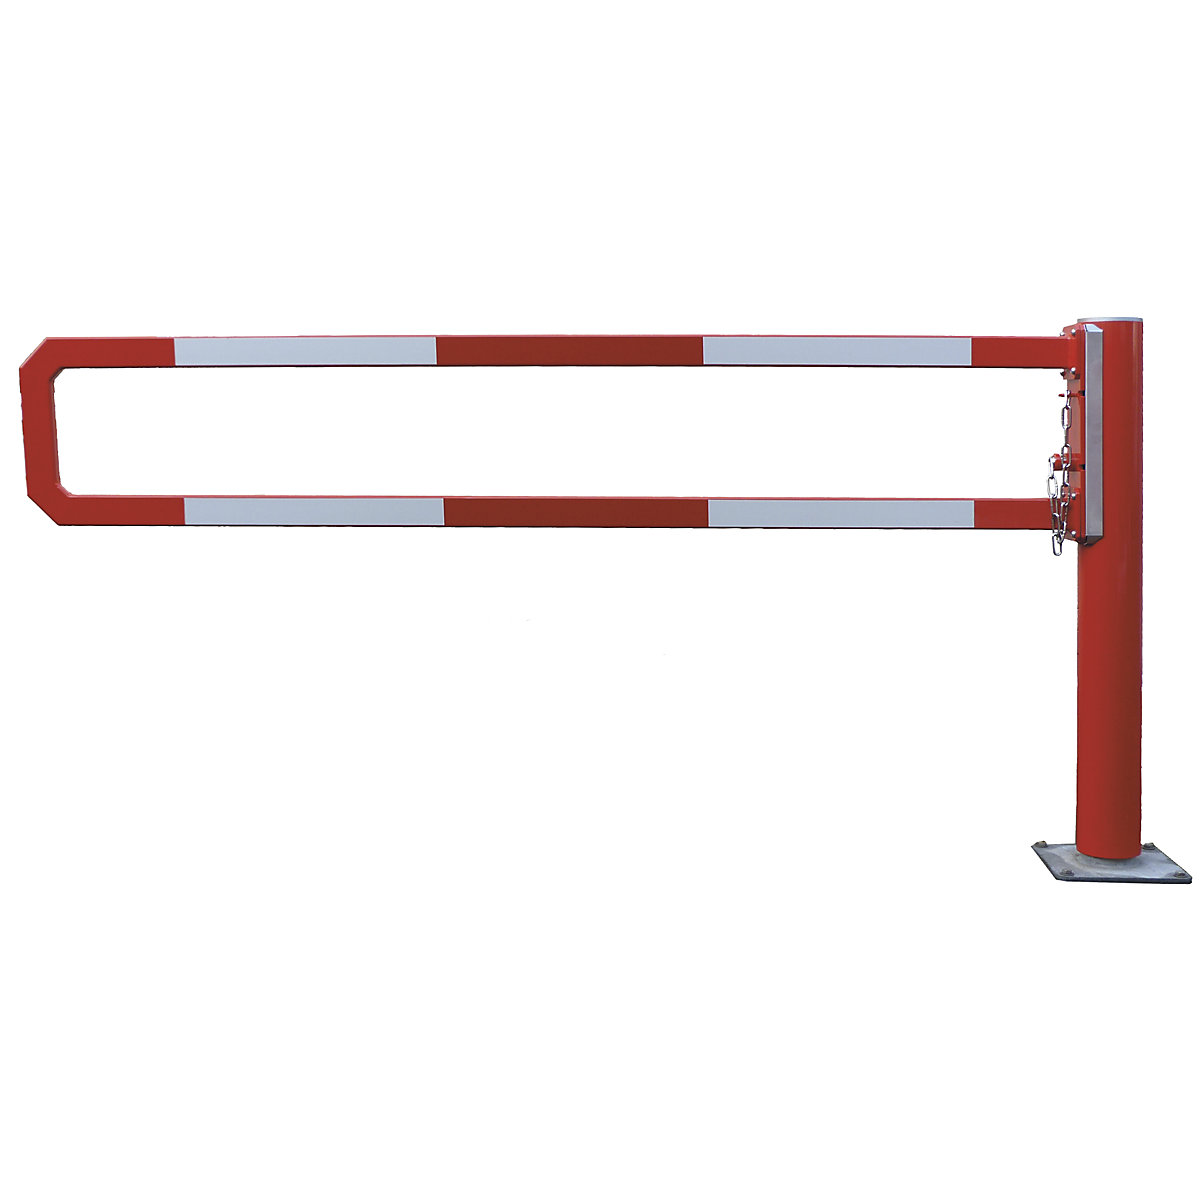 Barrera giratoria – Mannus, anchura útil 2,5 m, galvanizado al horno con recubrimiento en polvo adicional rojo-3